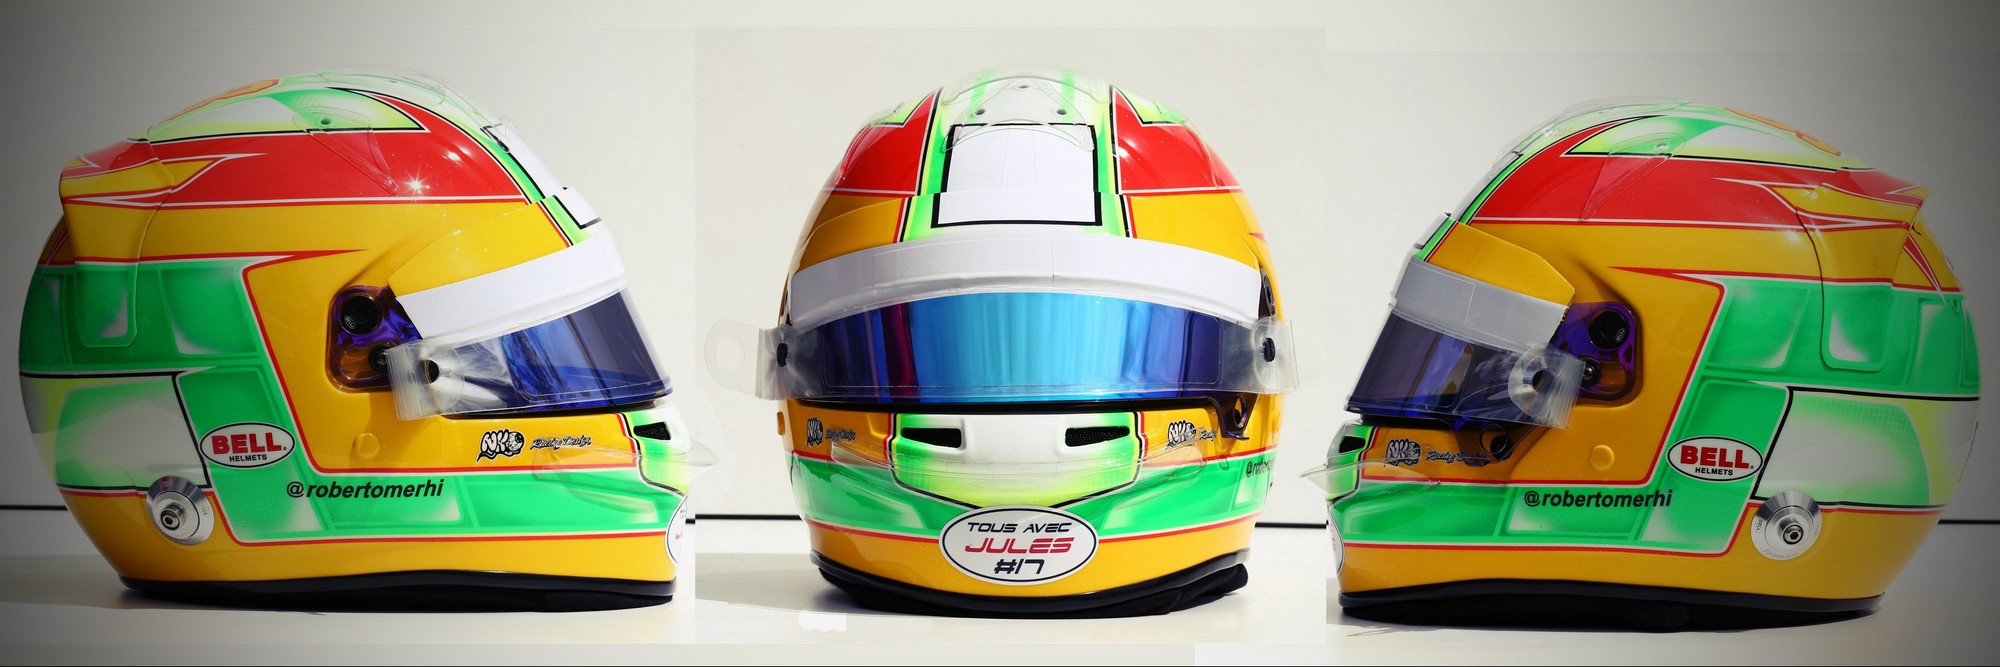 Шлем Роберто Мери на сезон 2015 года | 2015 helmet of Roberto Merhi